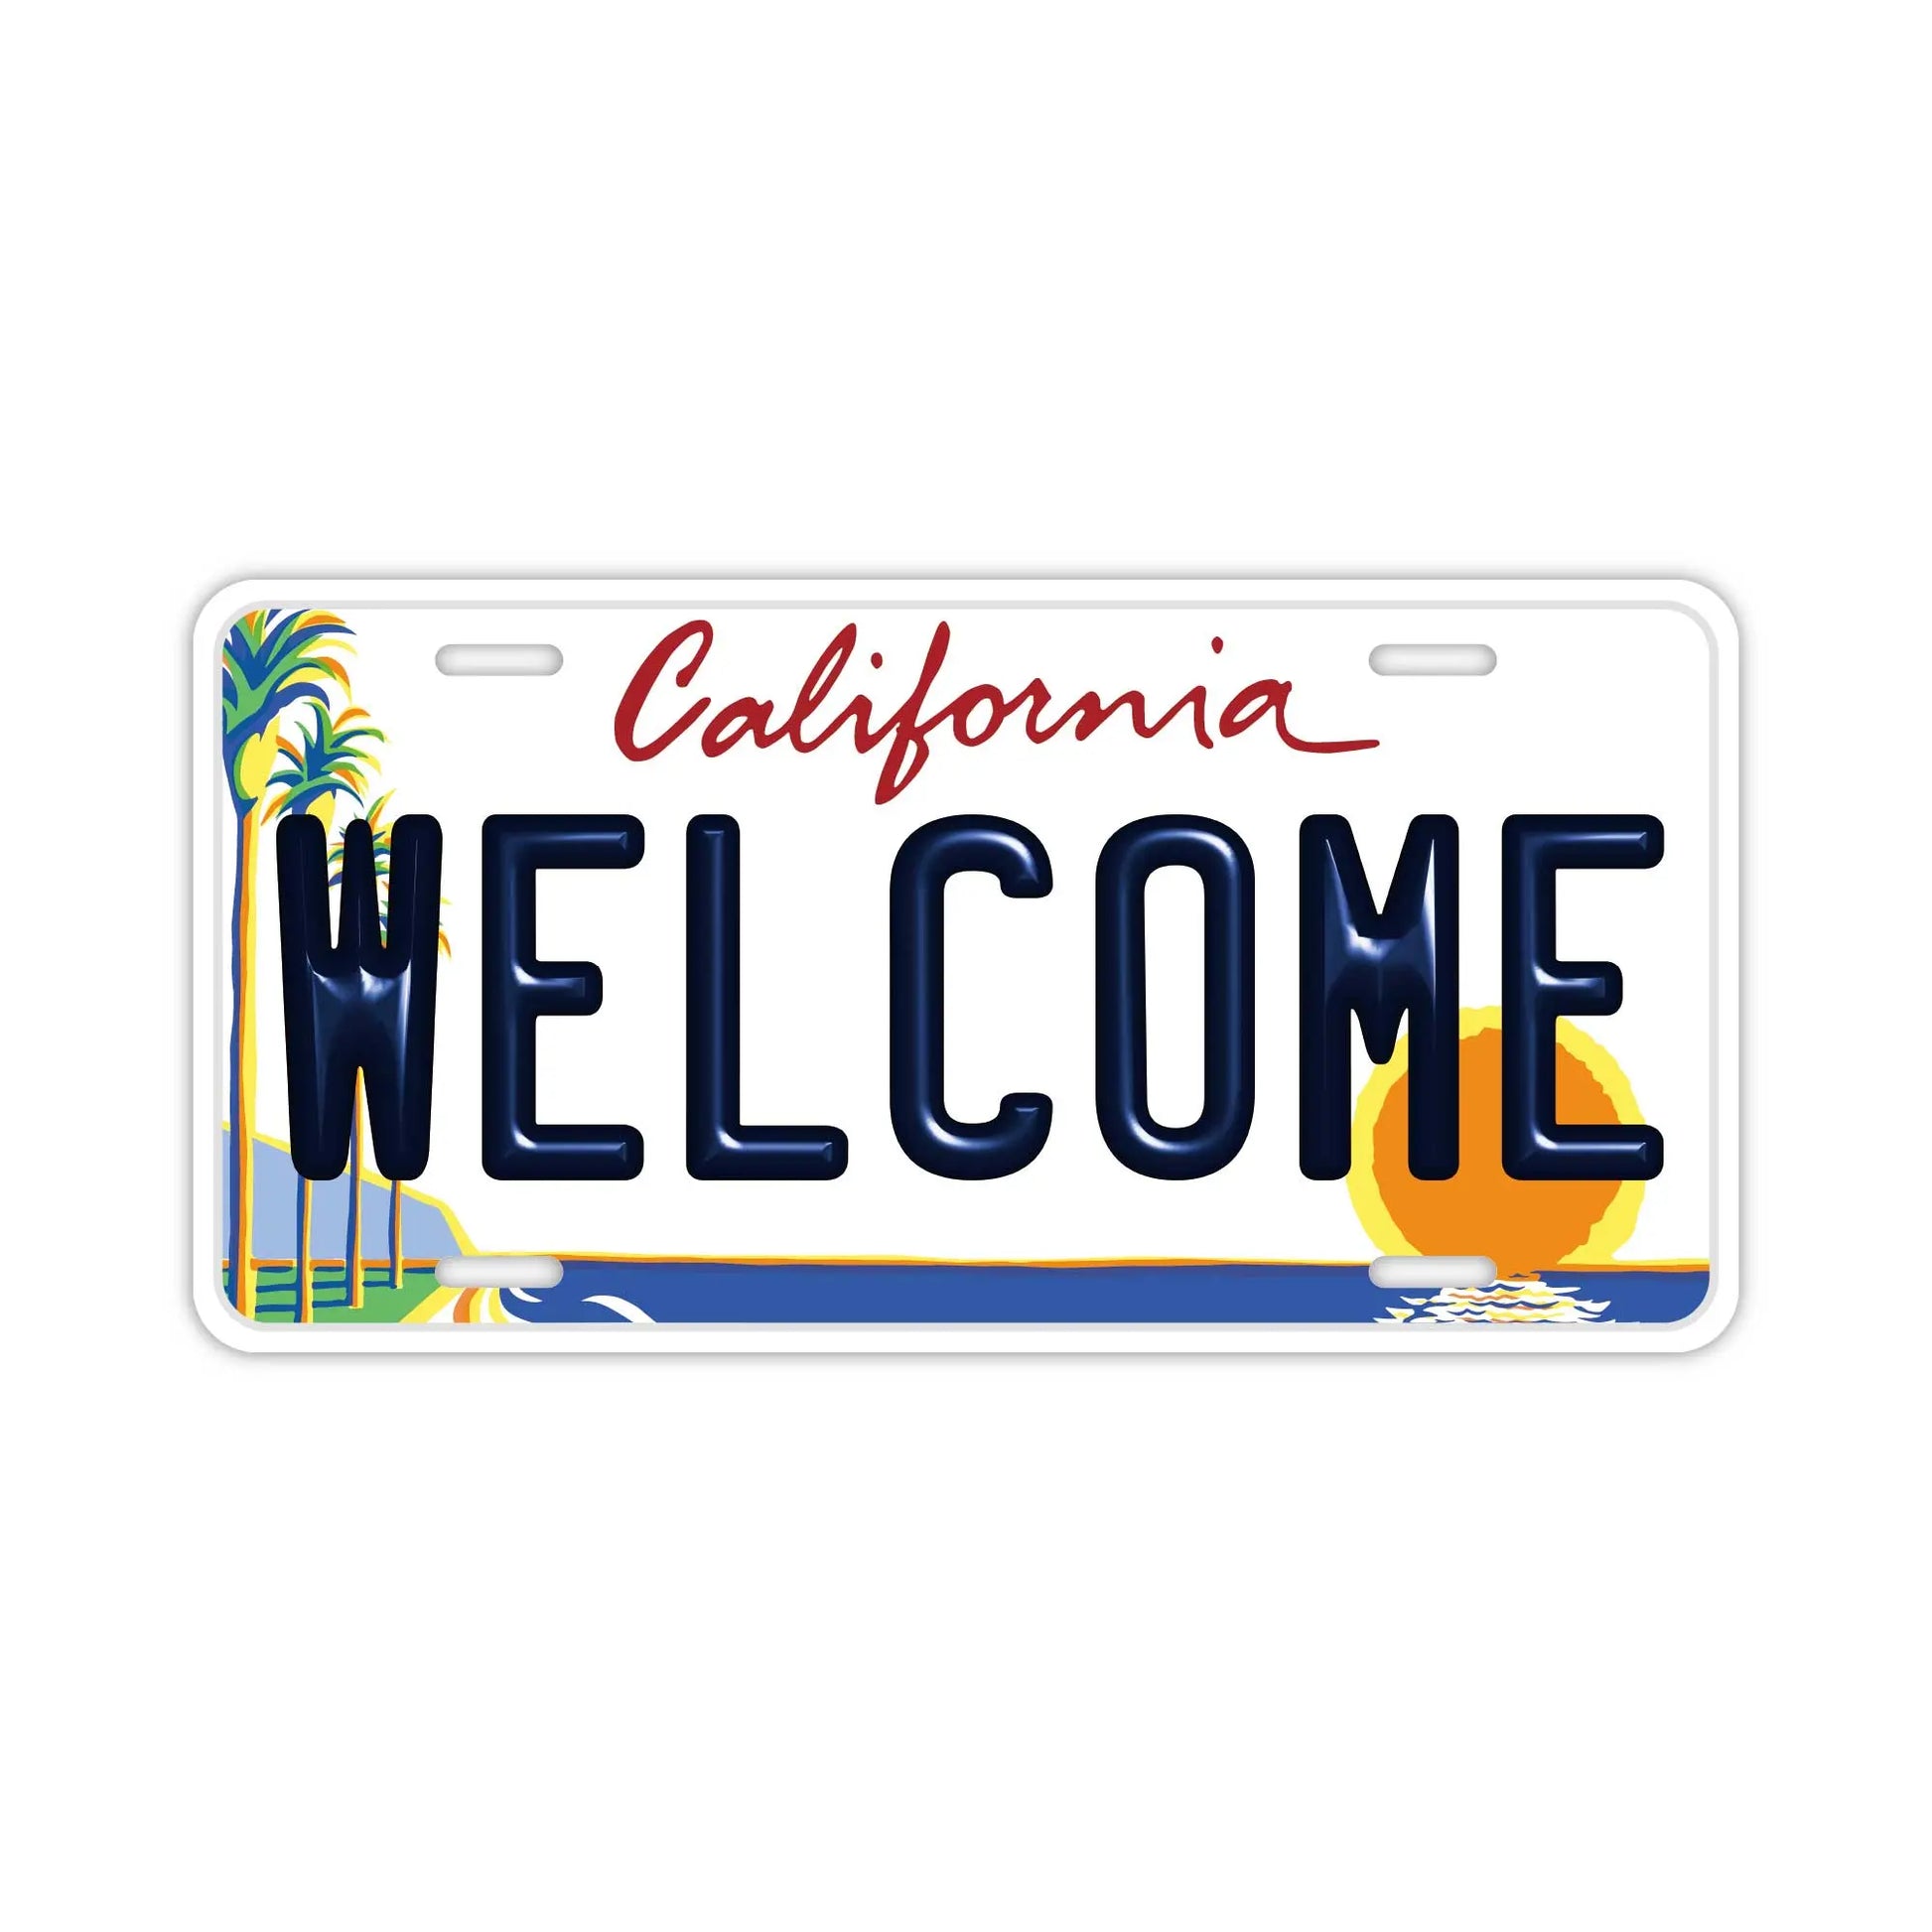 【ウェルカムボード看板】カリフォルニア州ヤシの木サンセット・アメリカライセンスプレート型サイン PL8HERO